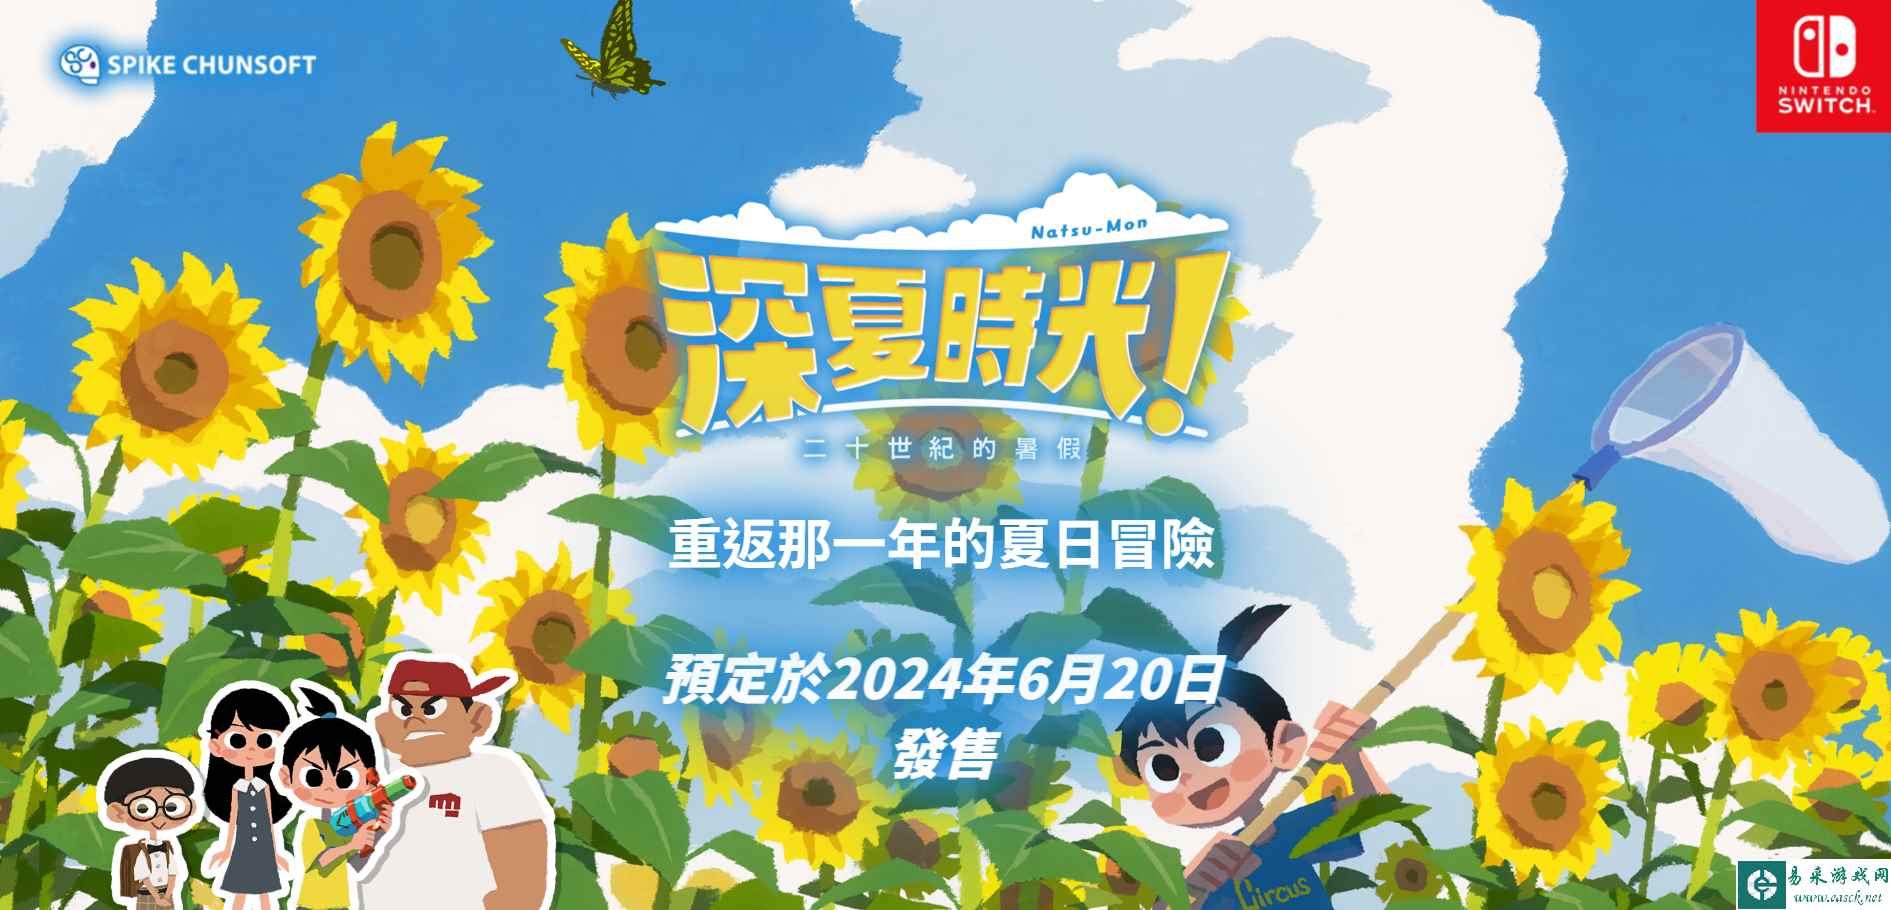 开发商 Spike Chuns《深夏时光！二十世纪的暑假》中文版将在6月20日发售 登陆NS